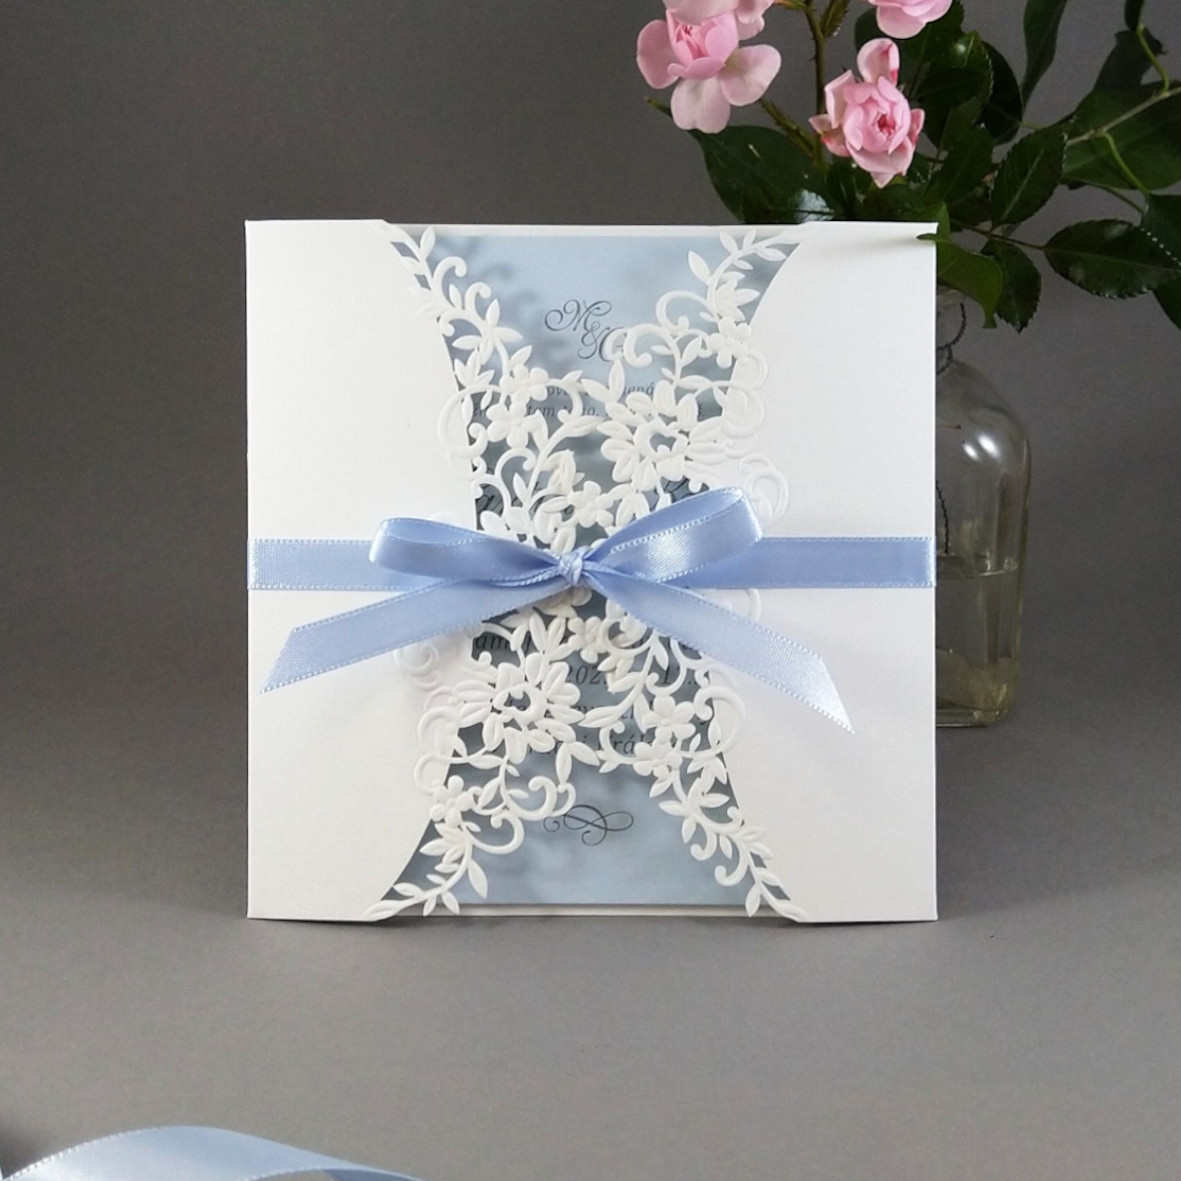 Svatební oznámení – čtvercové s krajkovým přebalem se světle modrou vnitřní kartou a atlasovou stuhou.